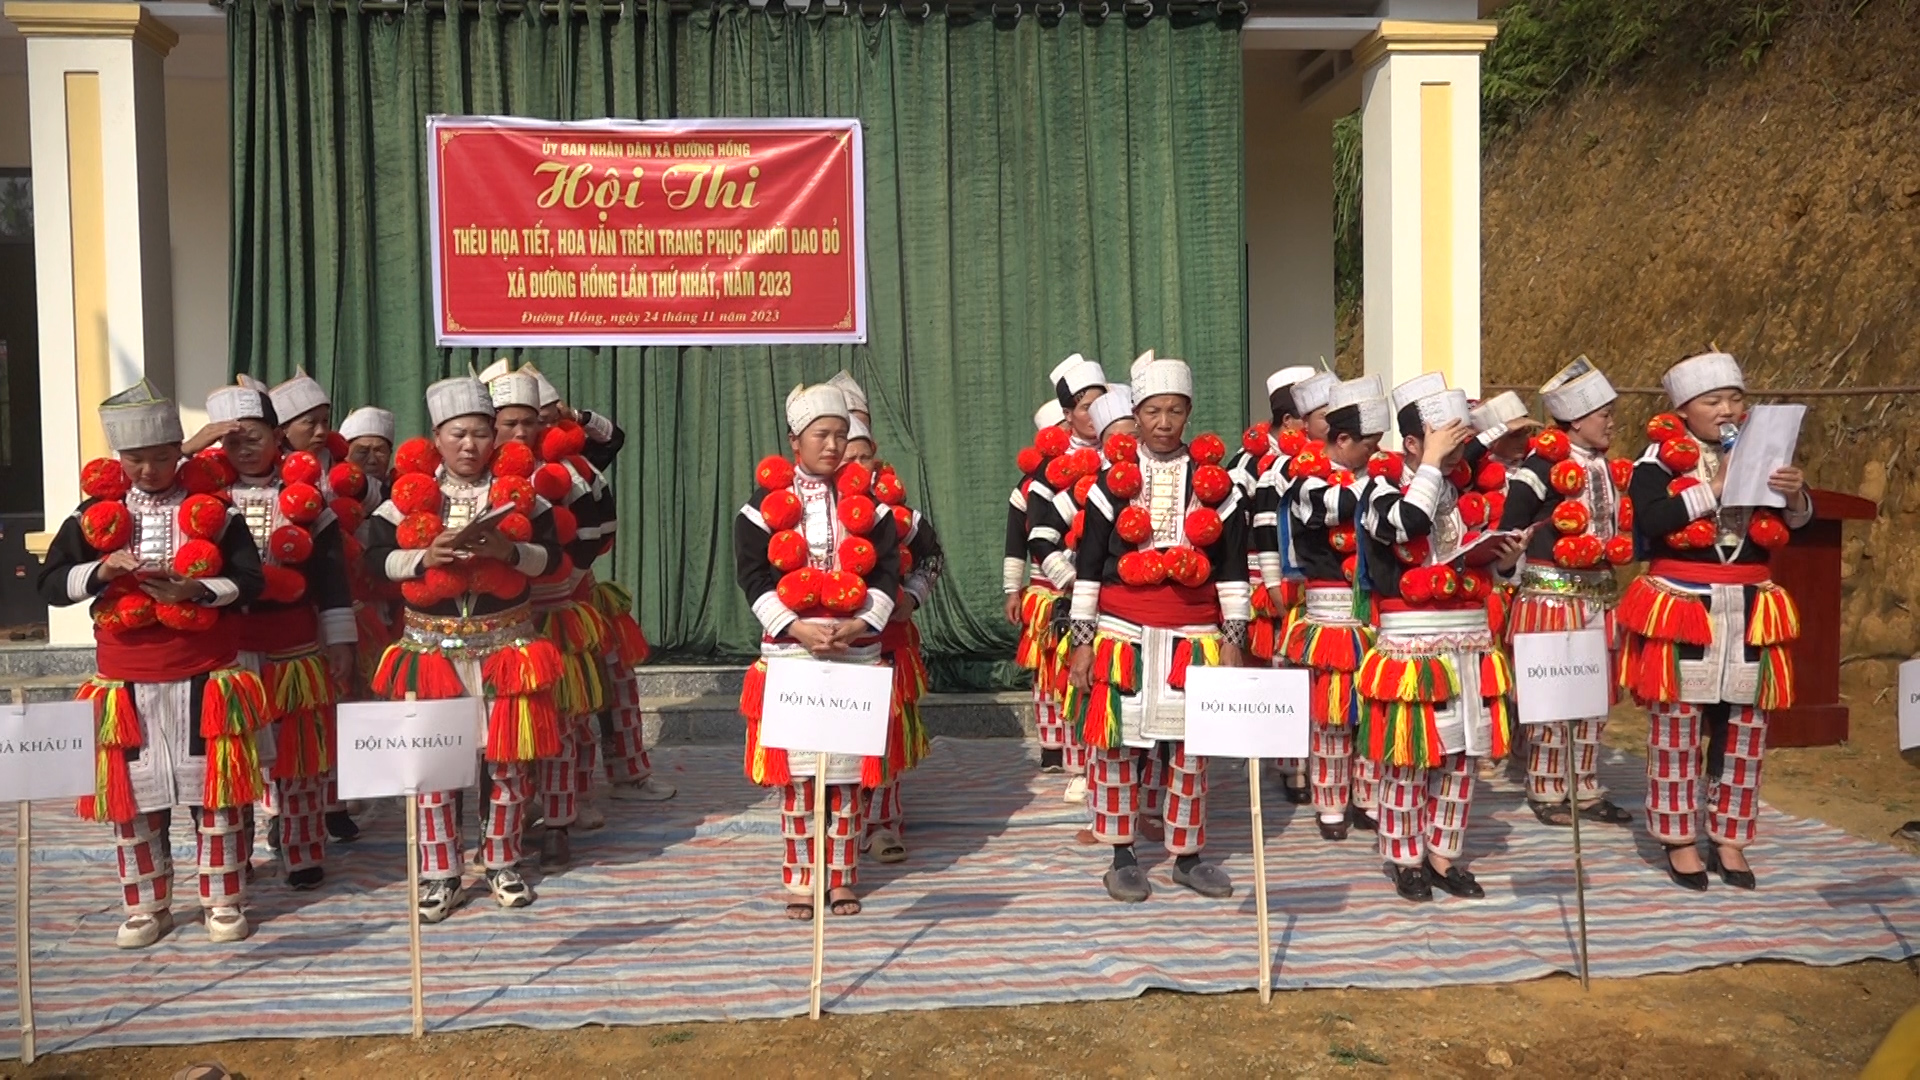 Hội thi thêu họa tiết, hoa văn trên trang phục người Dao đỏ xã Đường Hồng lần thứ nhất, năm 2023